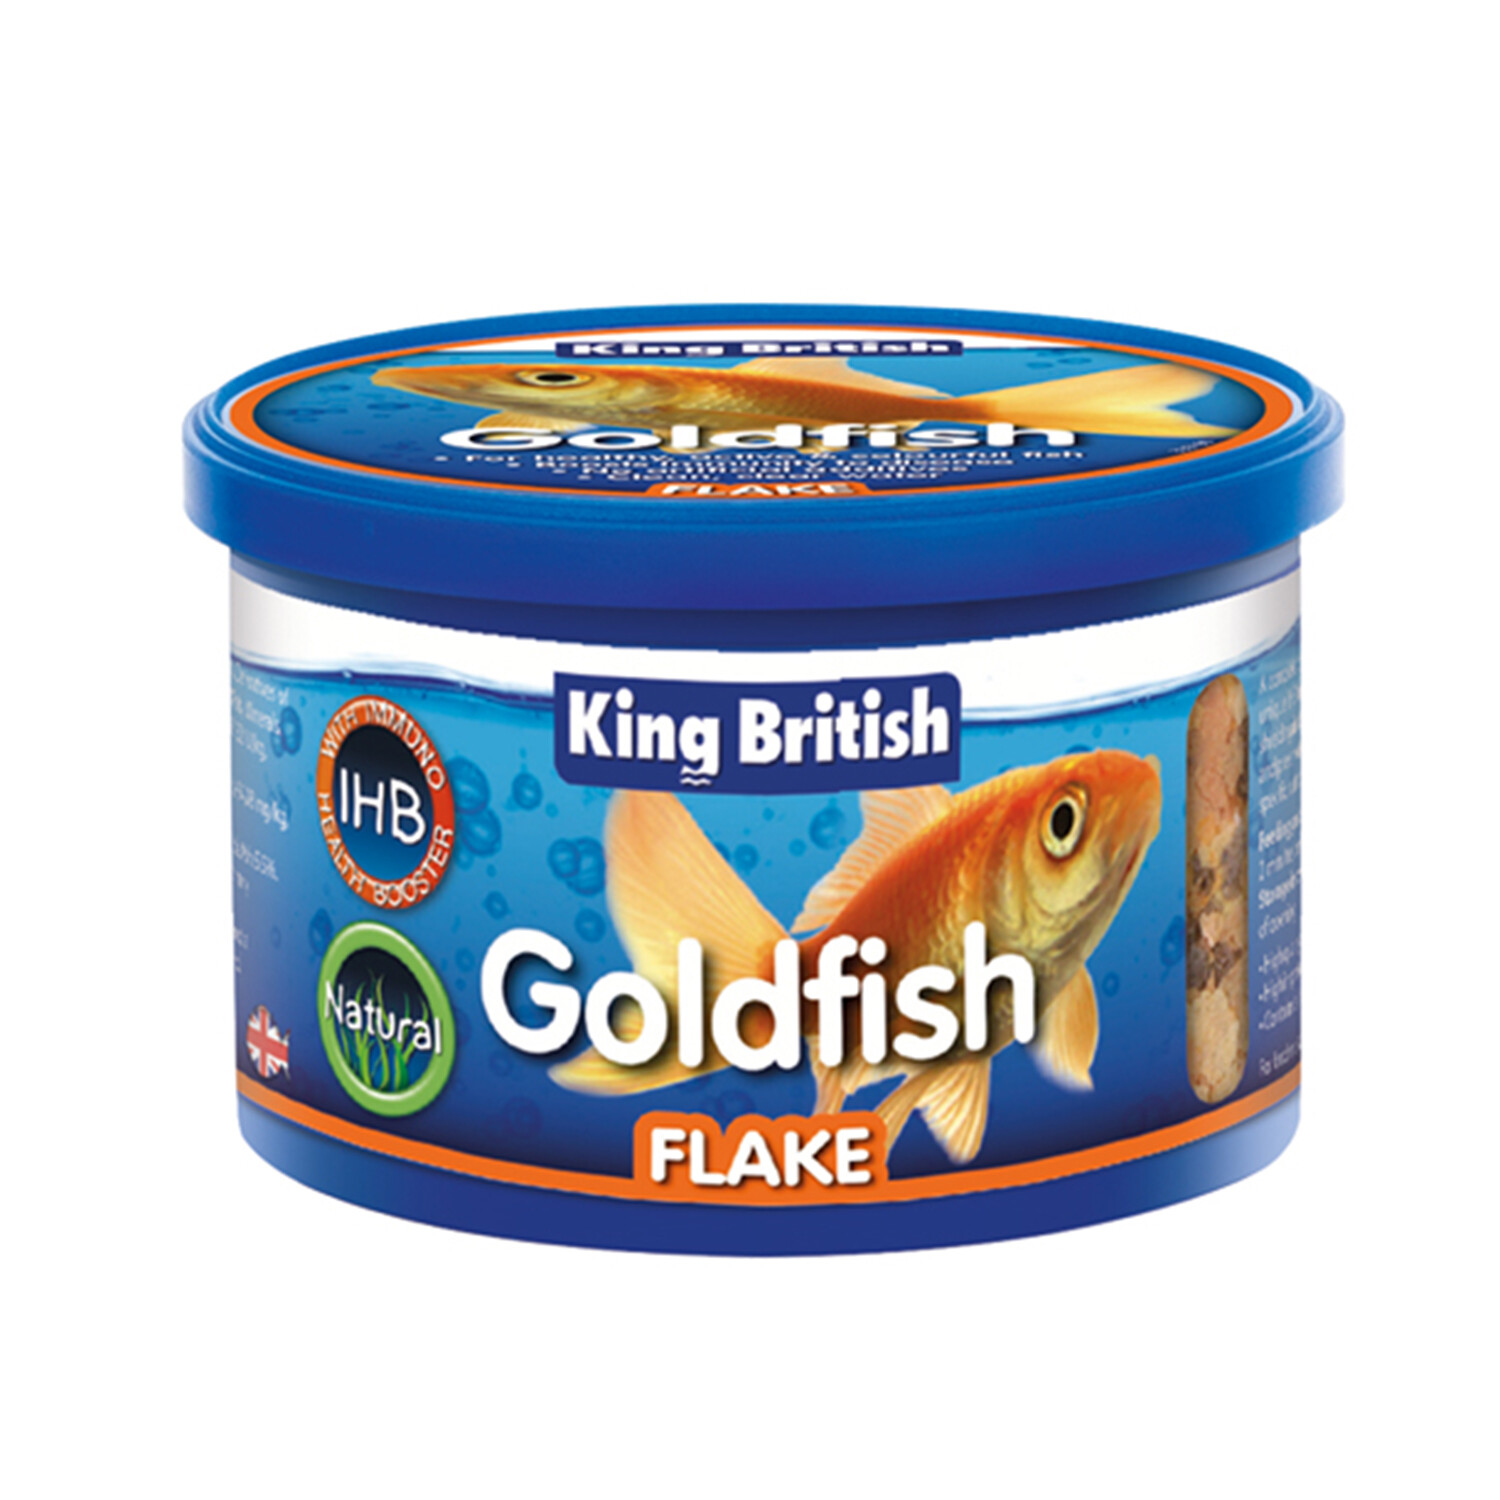 King British Goldfish Flake Food - 55g Image